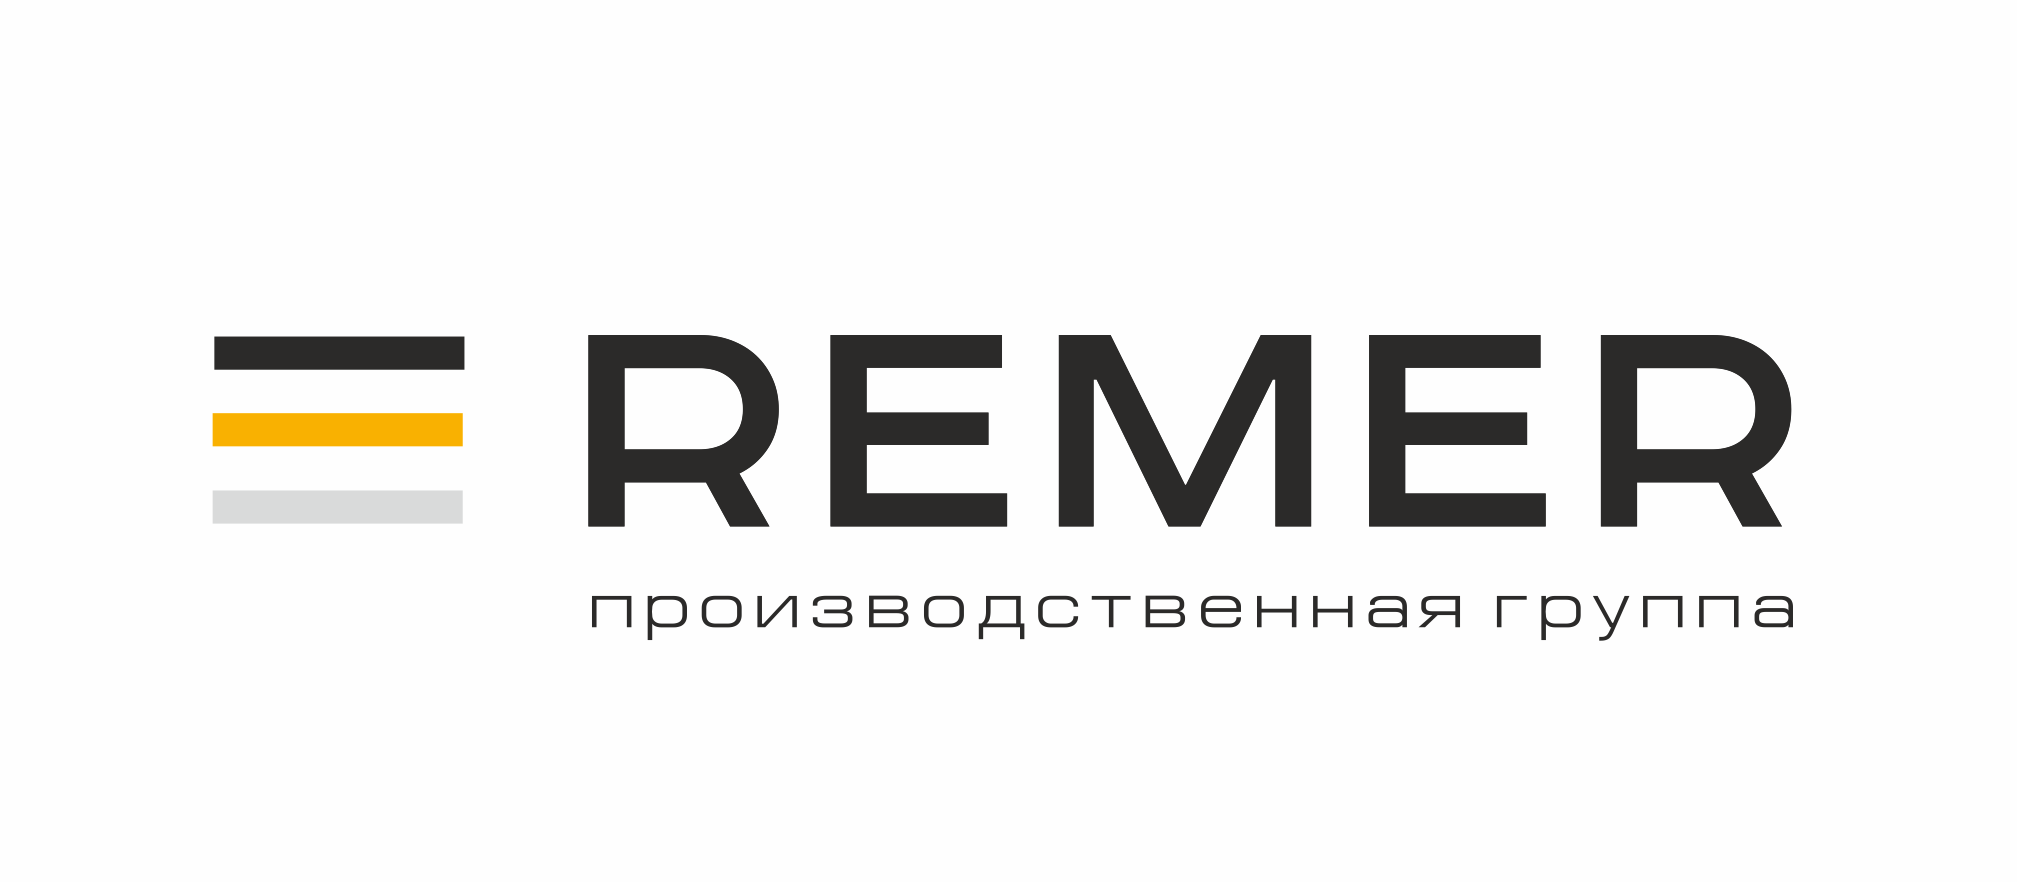 Обновление информационных материалов REMER